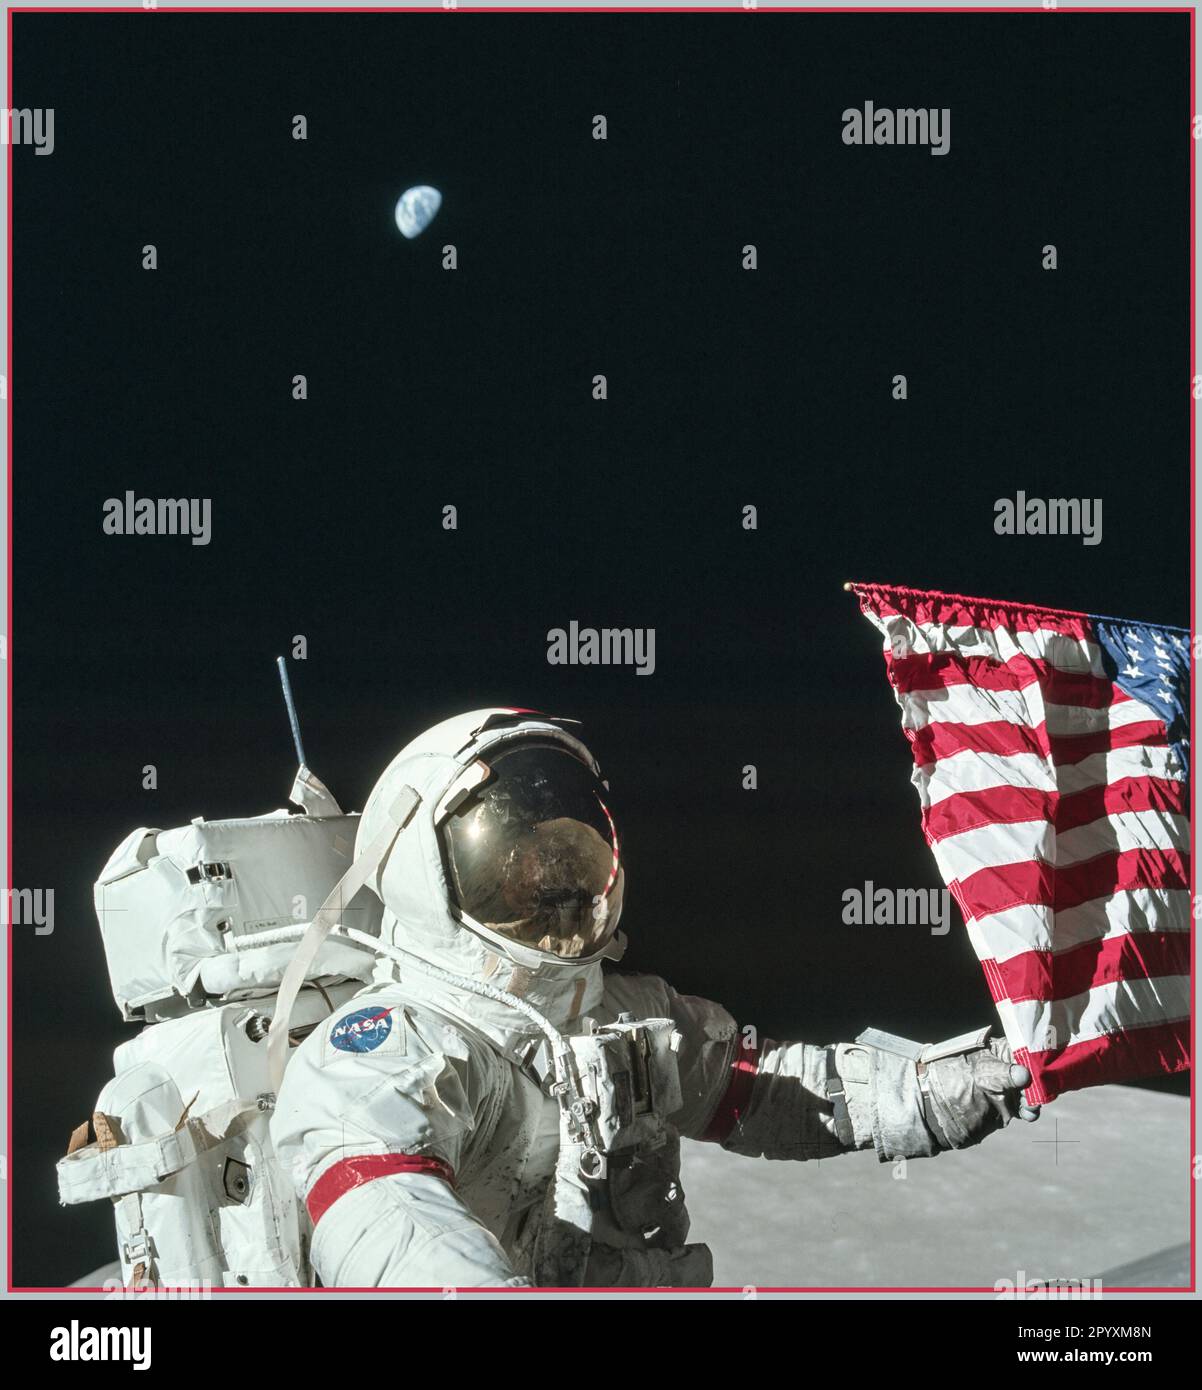 Apollo 17 (7-19 décembre 1972) était la onzième et dernière mission du programme Apollo de la NASA, la sixième et dernière fois que les humains ont posé le pied sur la Lune ou ont voyagé au-delà de l'orbite terrestre basse. Le commandant Gene Cernan et le pilote du module lunaire Harrison Schmitt ont marché sur la Lune, tandis que le pilote du module de commandement Ronald Evans a orbité au-dessus. Schmitt était le seul géologue professionnel à atterrir sur la Lune. Apollo 17 Hasselblad image du magazine Kodak film 1972 Banque D'Images